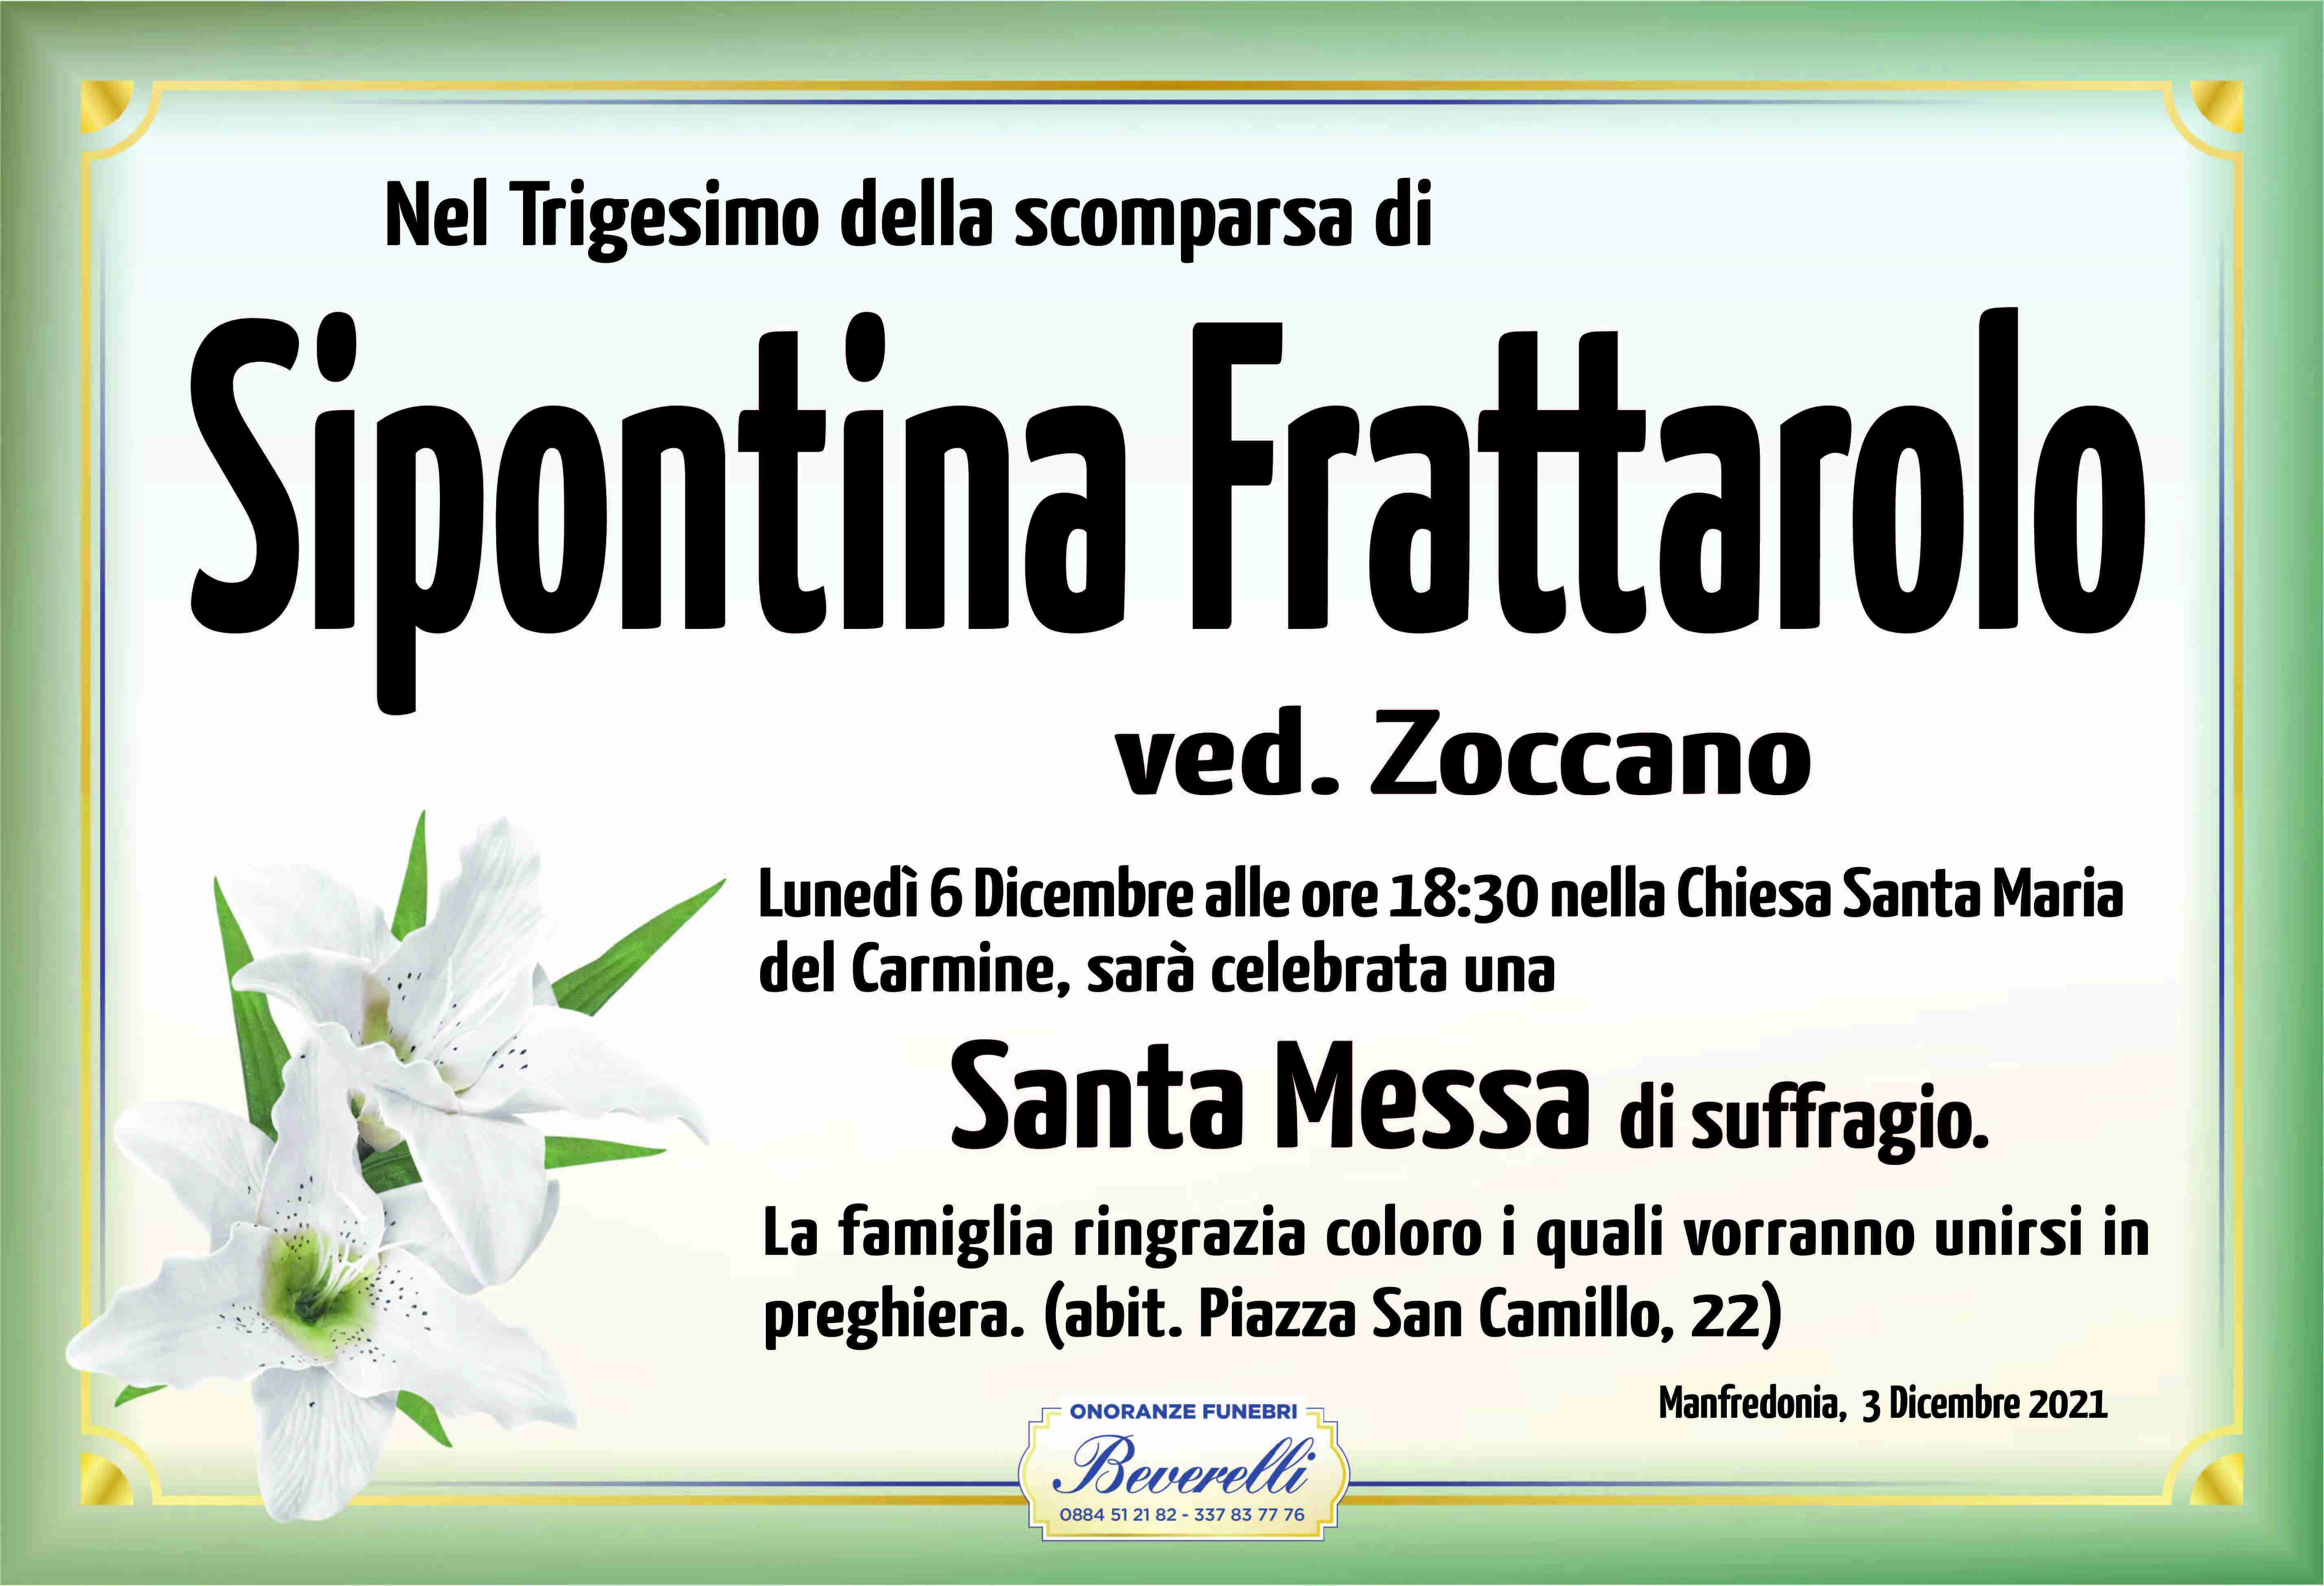 Sipontina Frattarolo